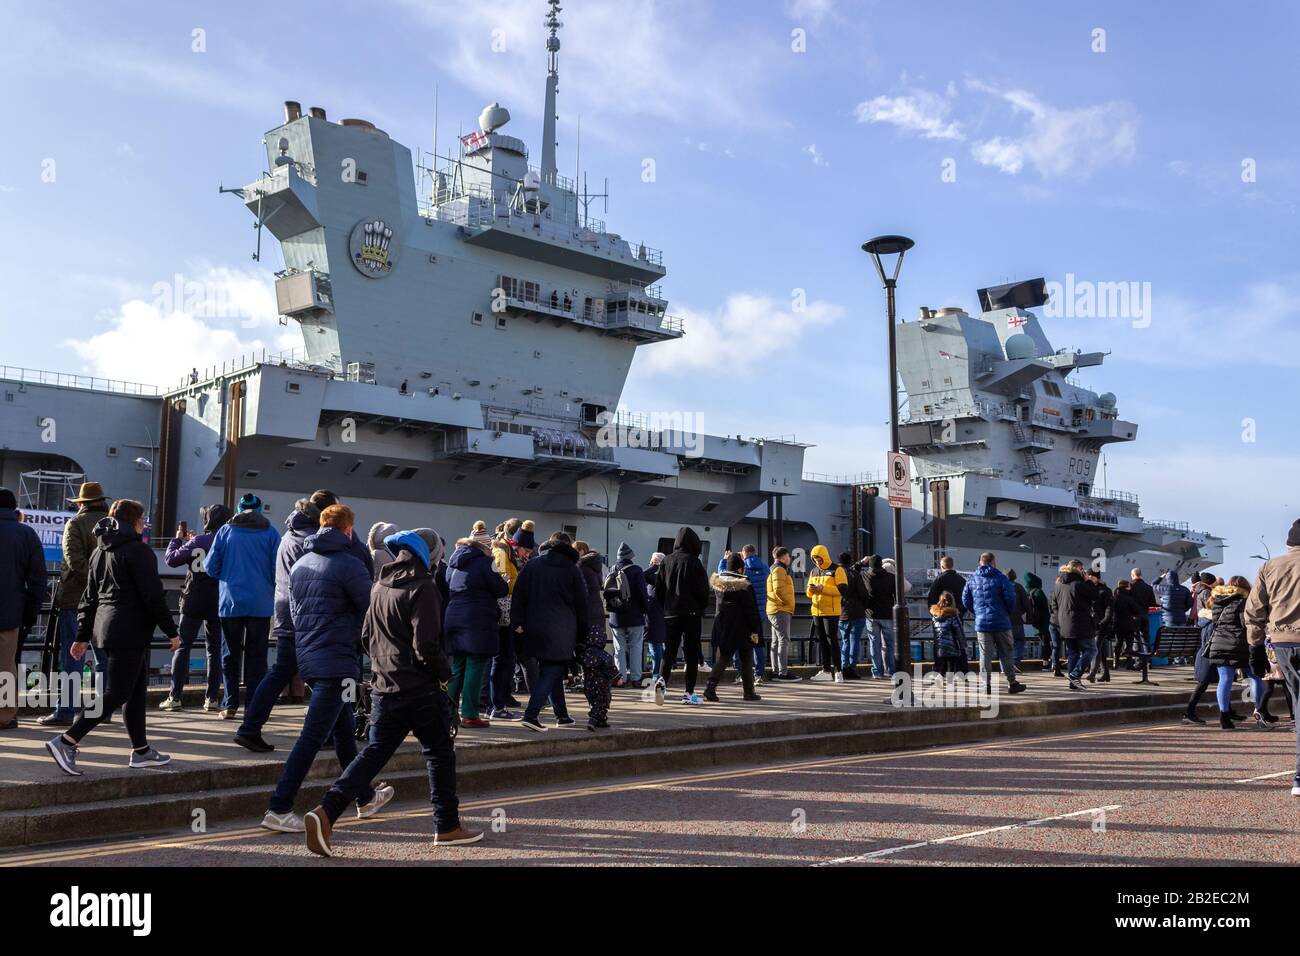 Multitudes viendo el portaaviones HMS Prince of Wales en Princes Dock, Liverpool Foto de stock